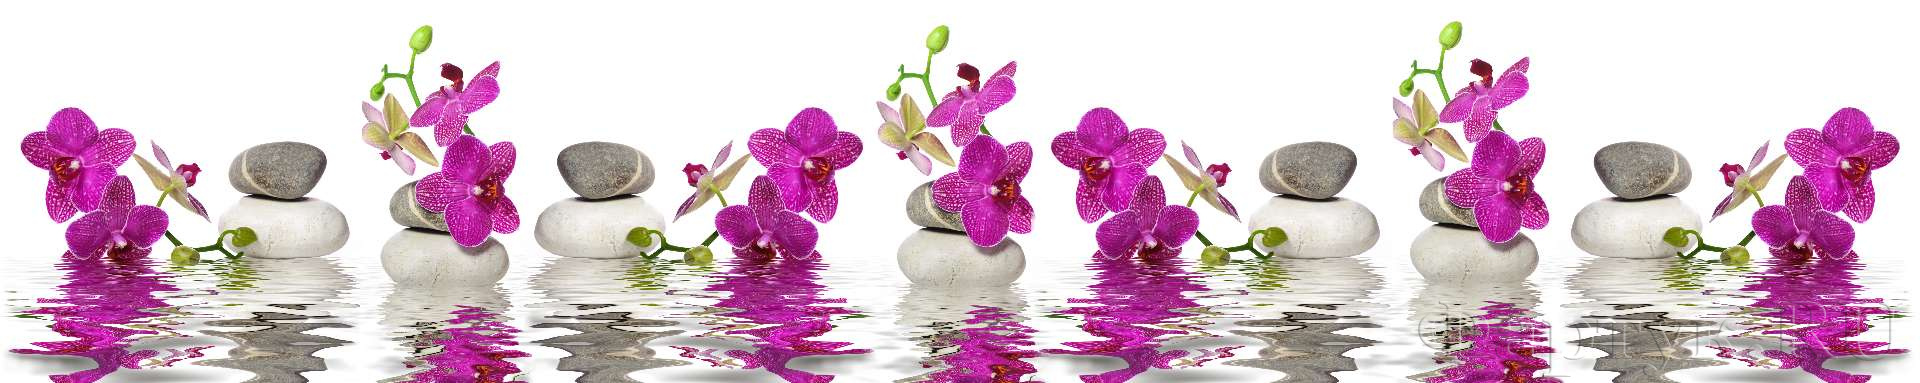 Ветки орхидеи на воде